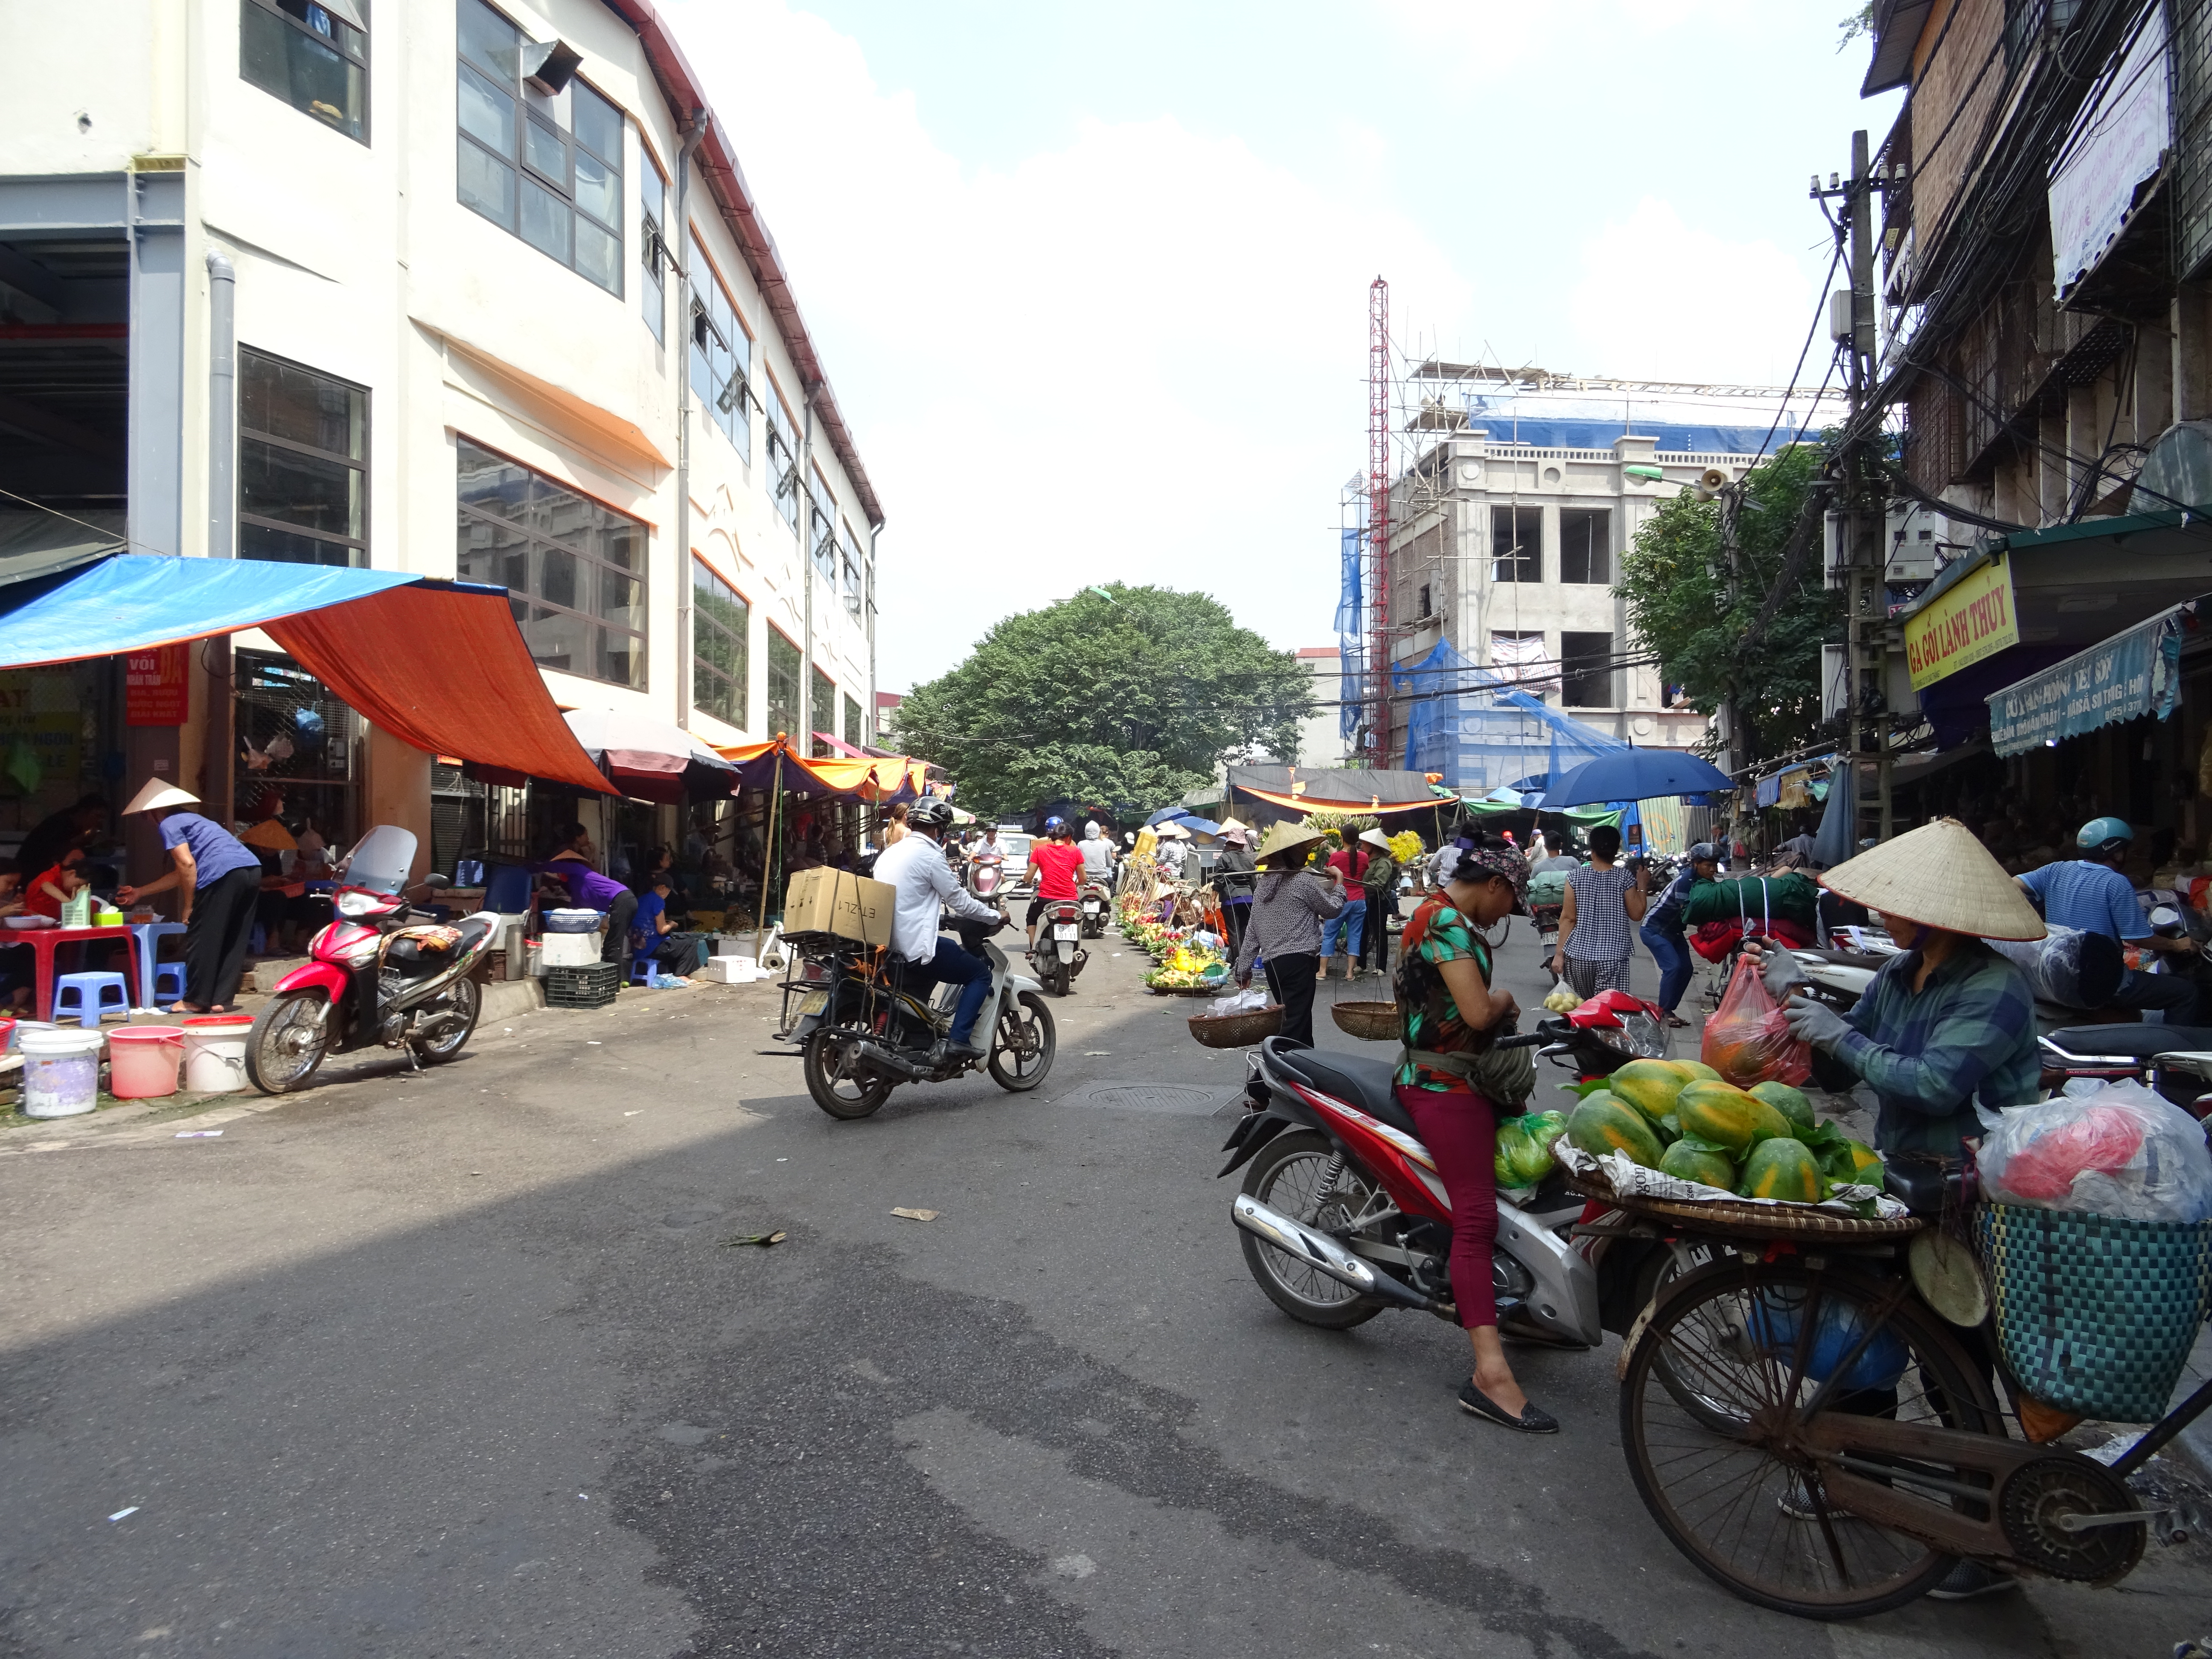 Tre giorni ad Hanoi: cosa vedere